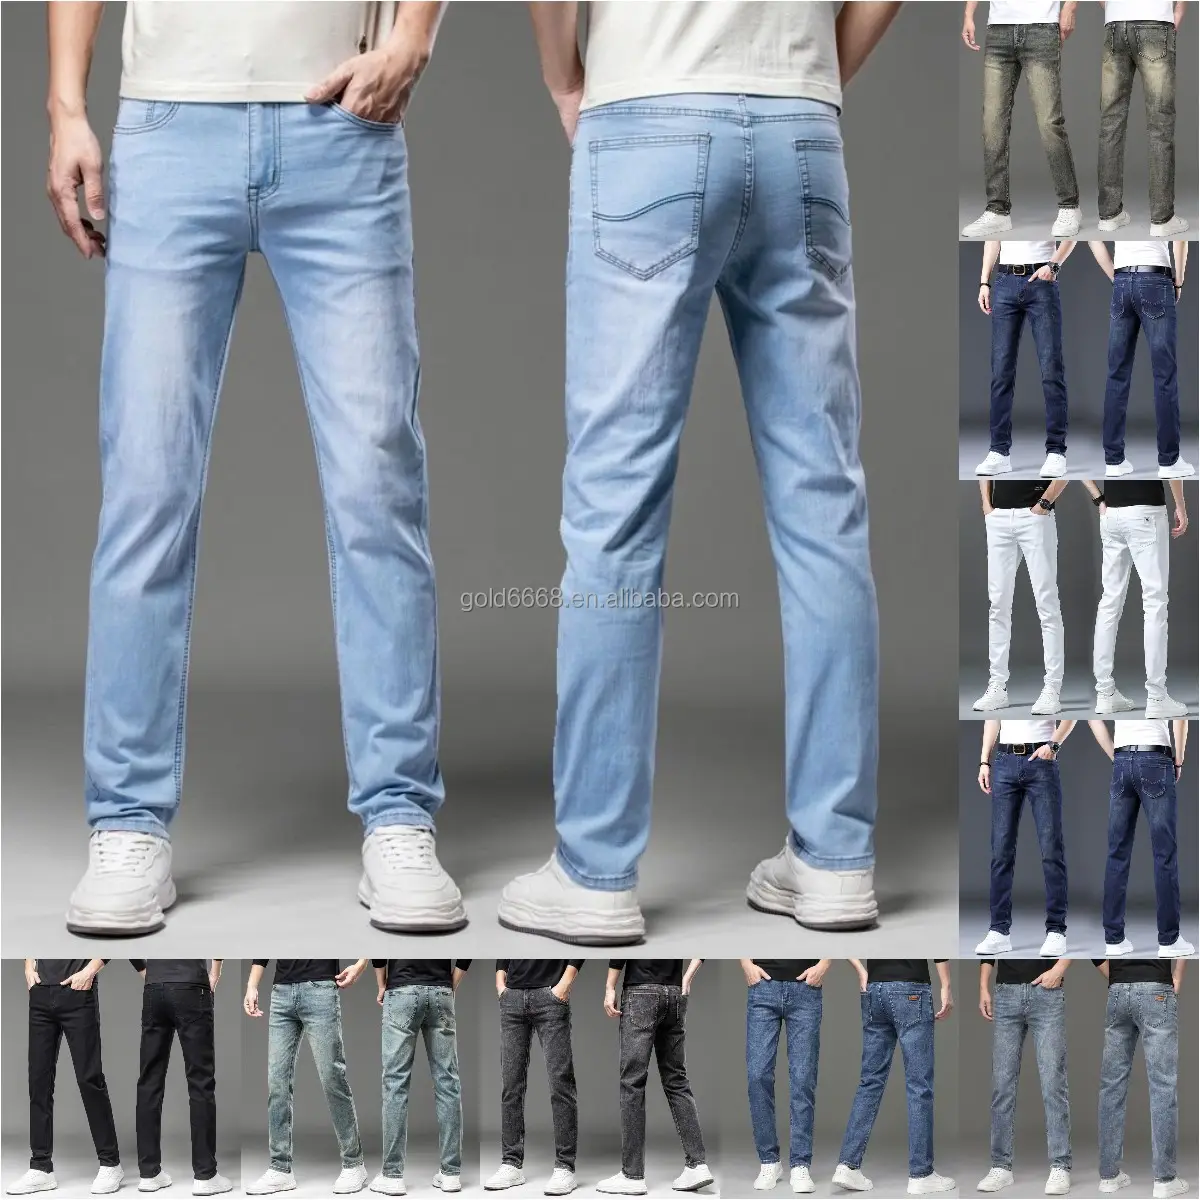 Groothandel Nieuwe Stijl Mannen Nood Vernietiging Broek Badge Broek Art Skinny Jeans Slanke Broek Heren Denim Jeans